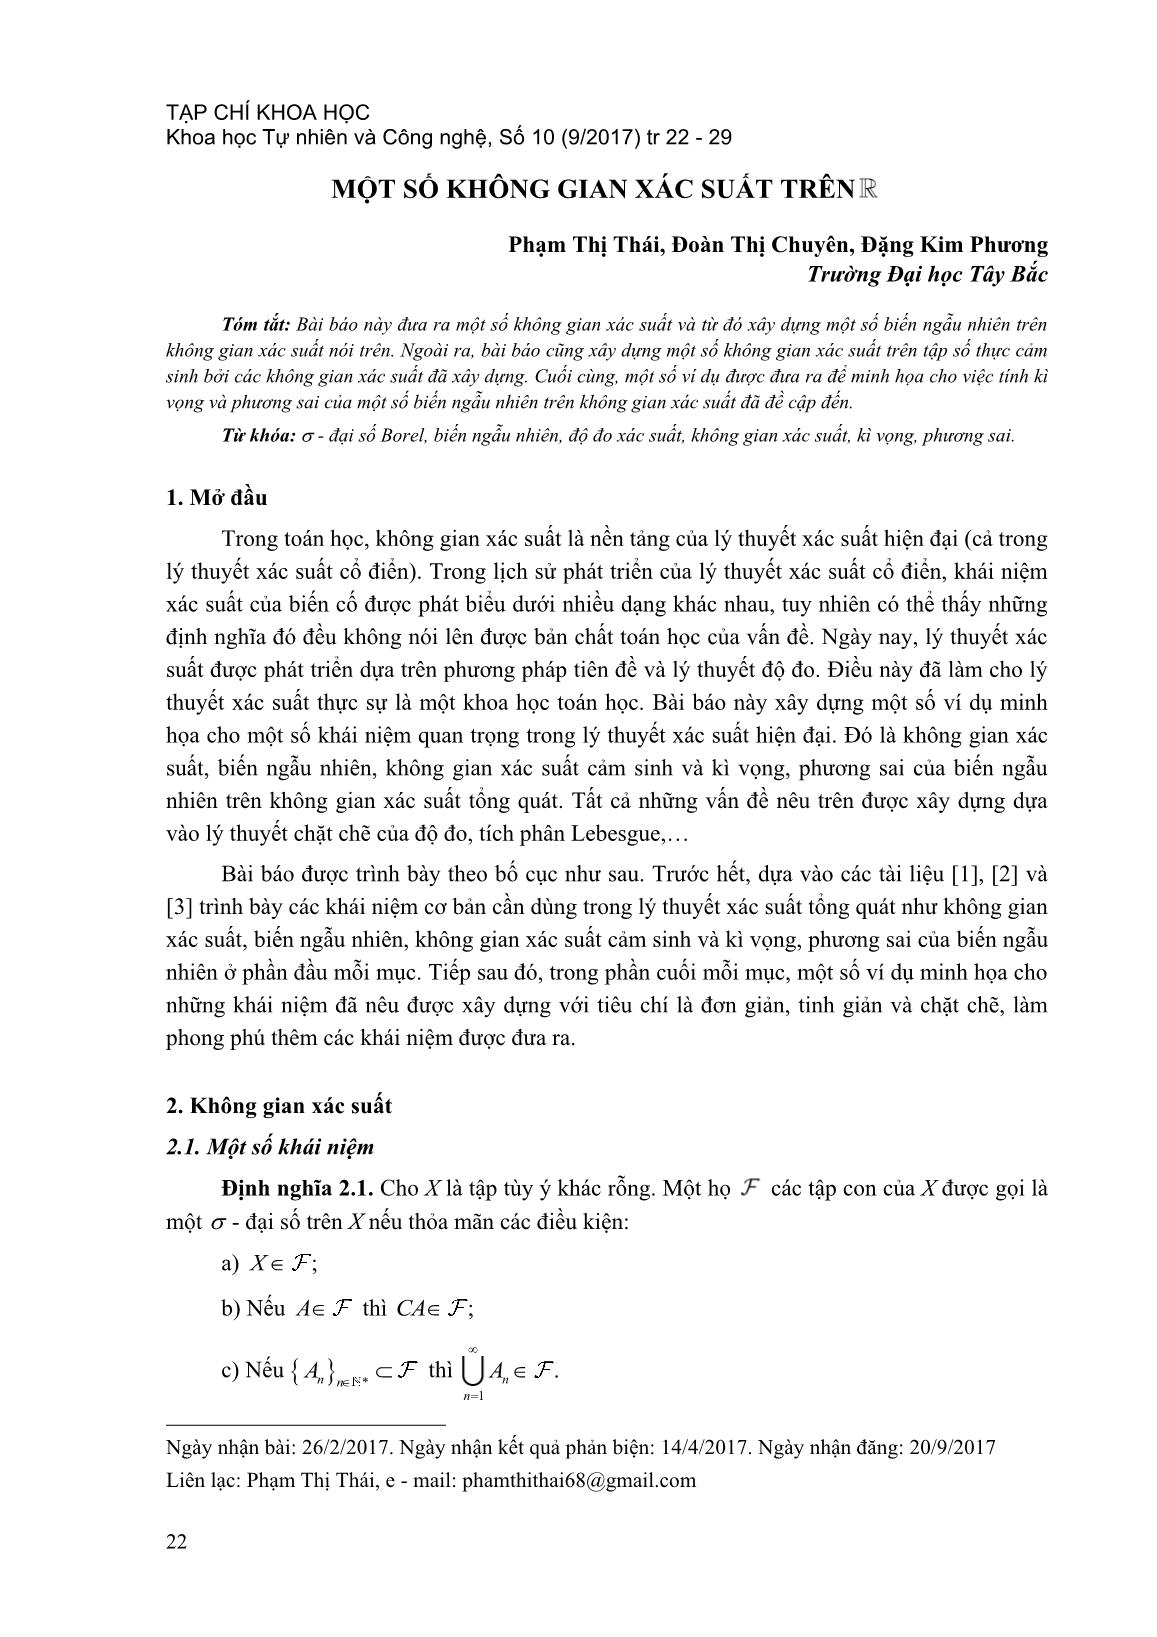 Một số không gian xác suất trên R trang 1